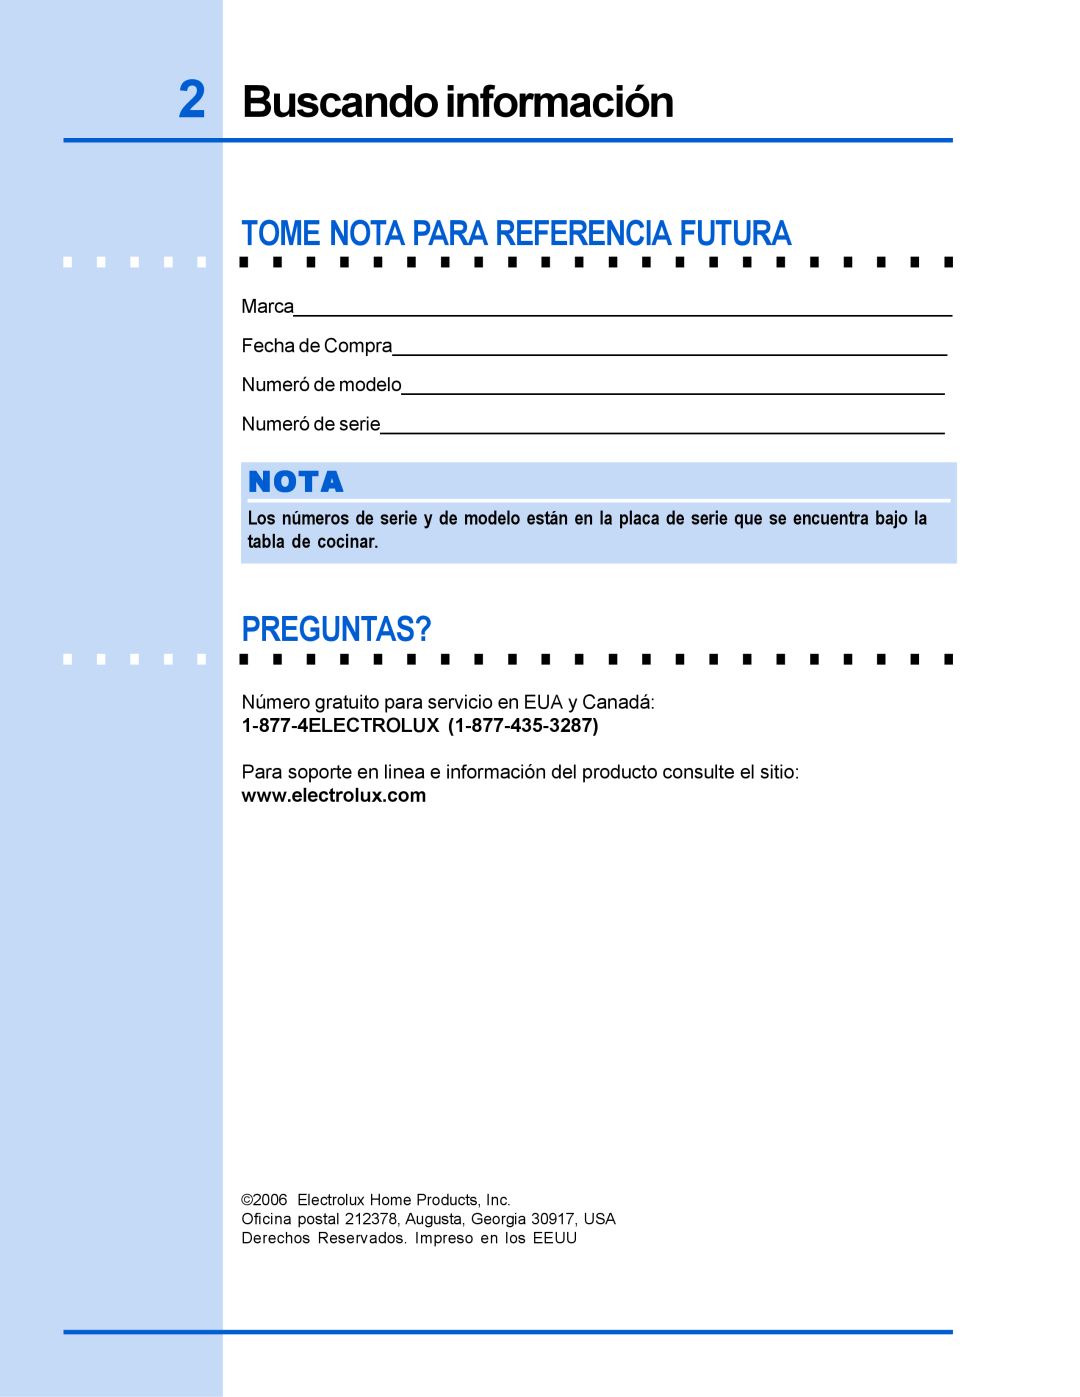 Electrolux 318 200 635 manual Buscandoinformación, Tome Nota Para Referencia Futura, Preguntas?, 1-877-4ELECTROLUX 